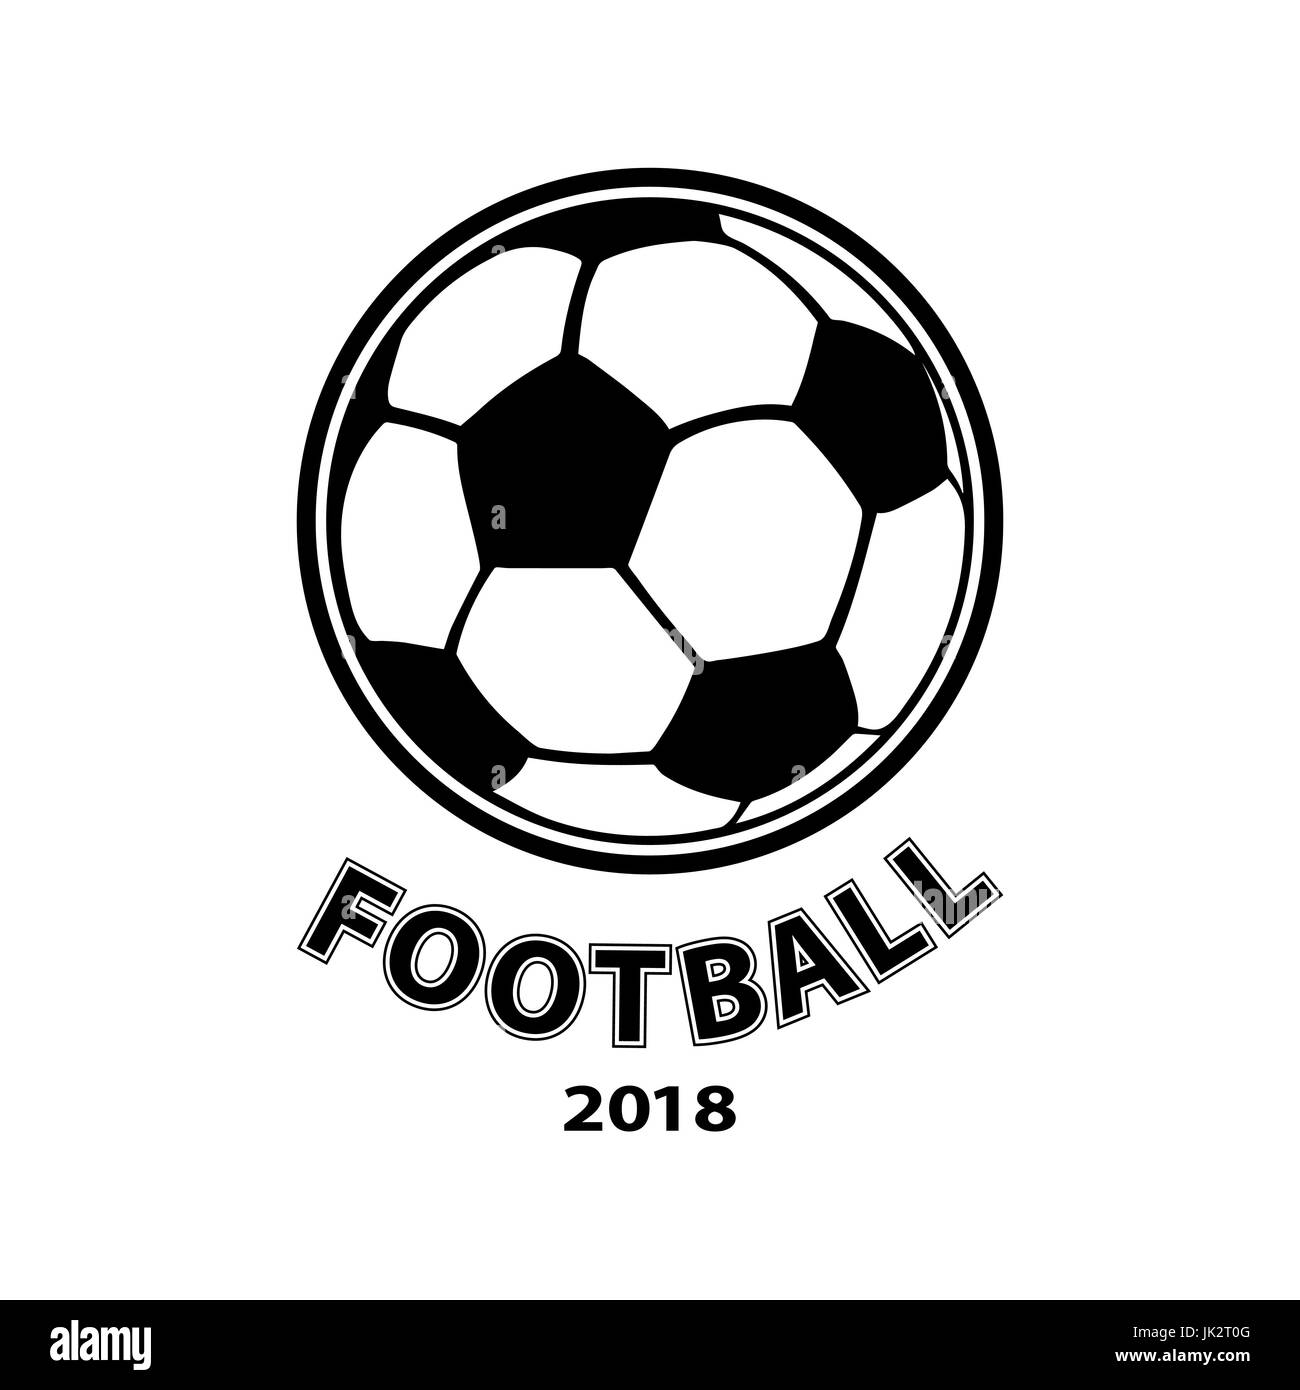 Fussball Logo